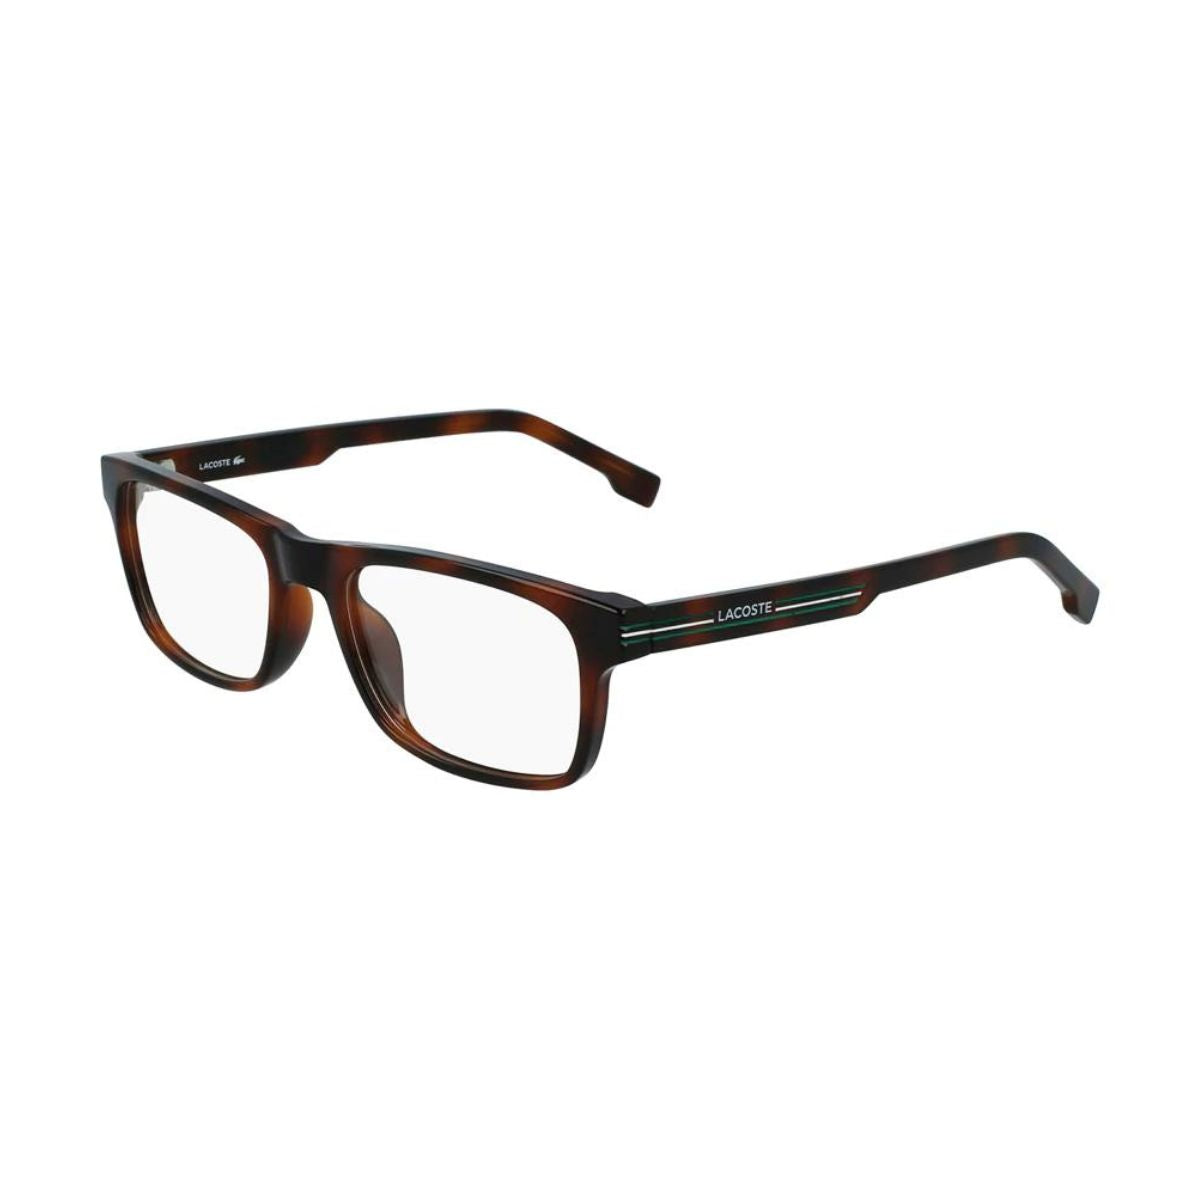 "Lacoste 2886 230 optical eyewear frame for men and women at optorium"